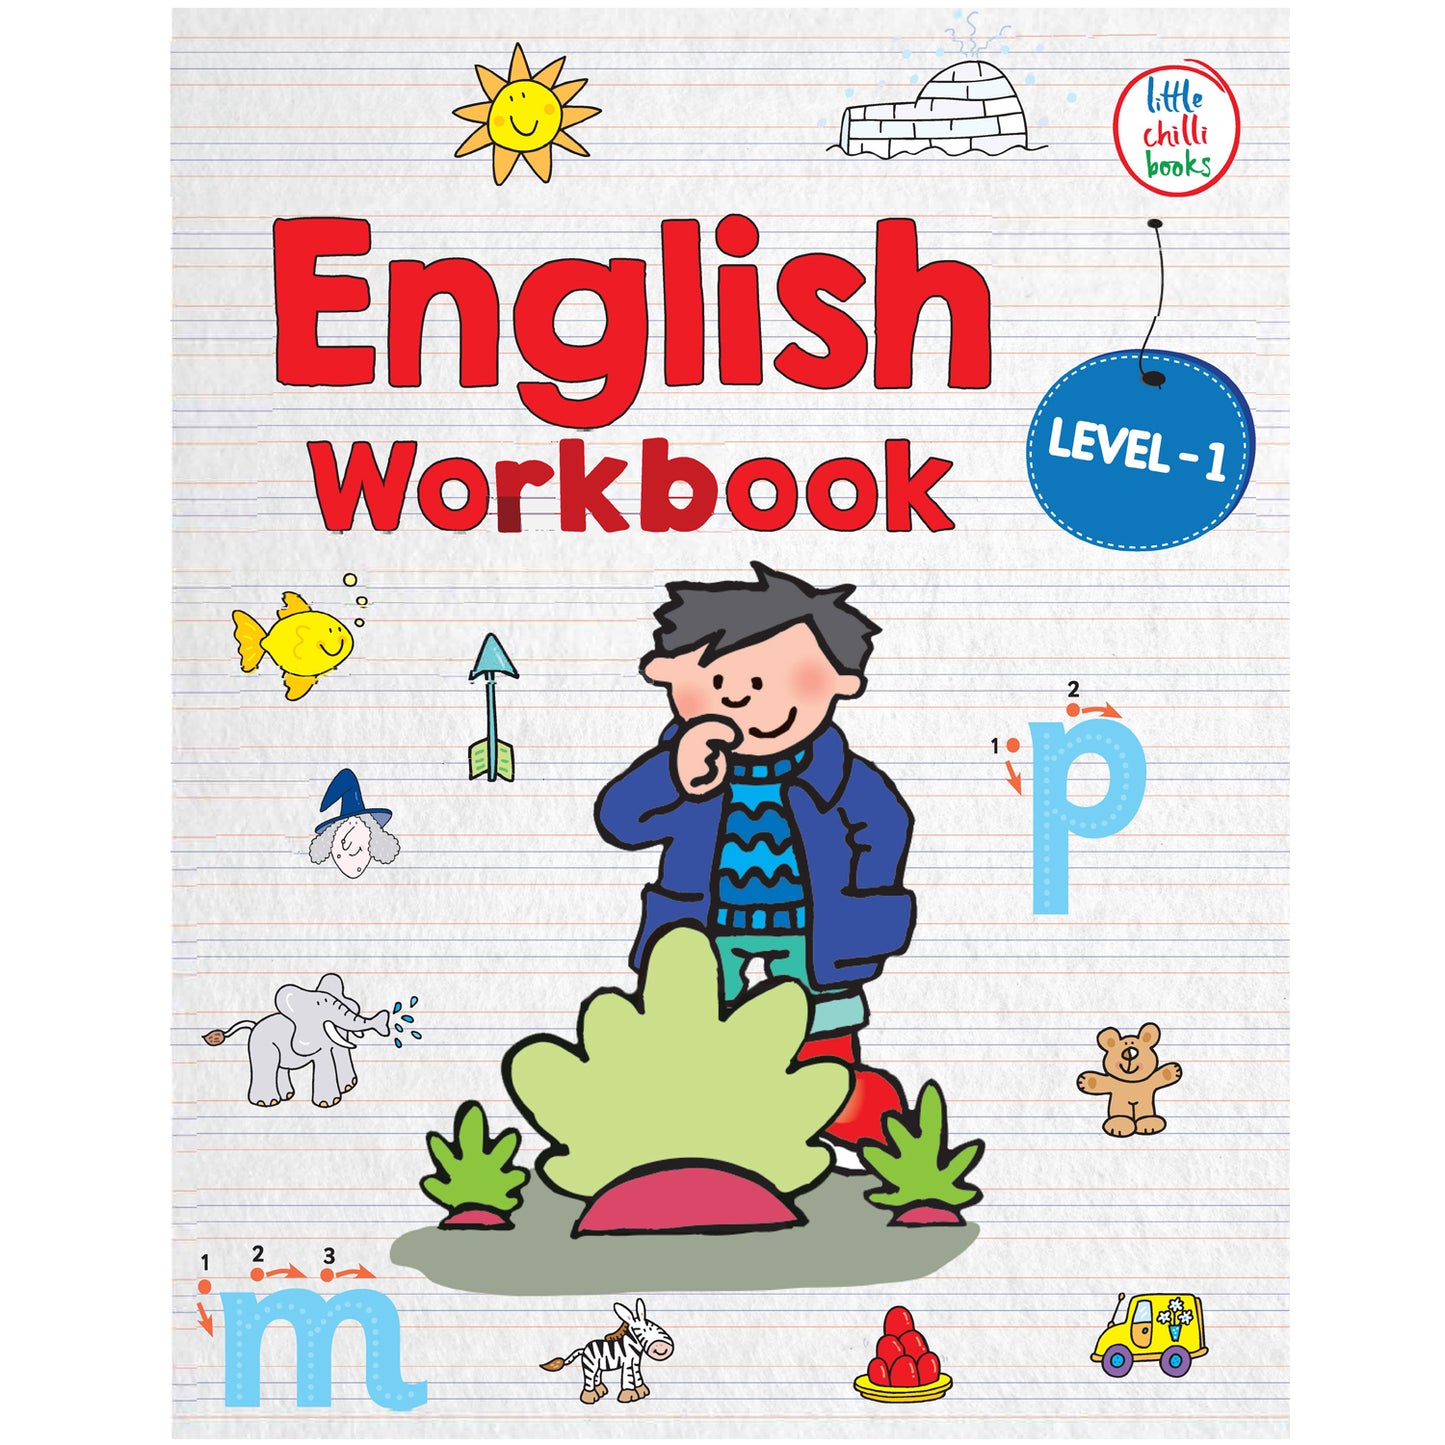 English Workbook LEVEL-1